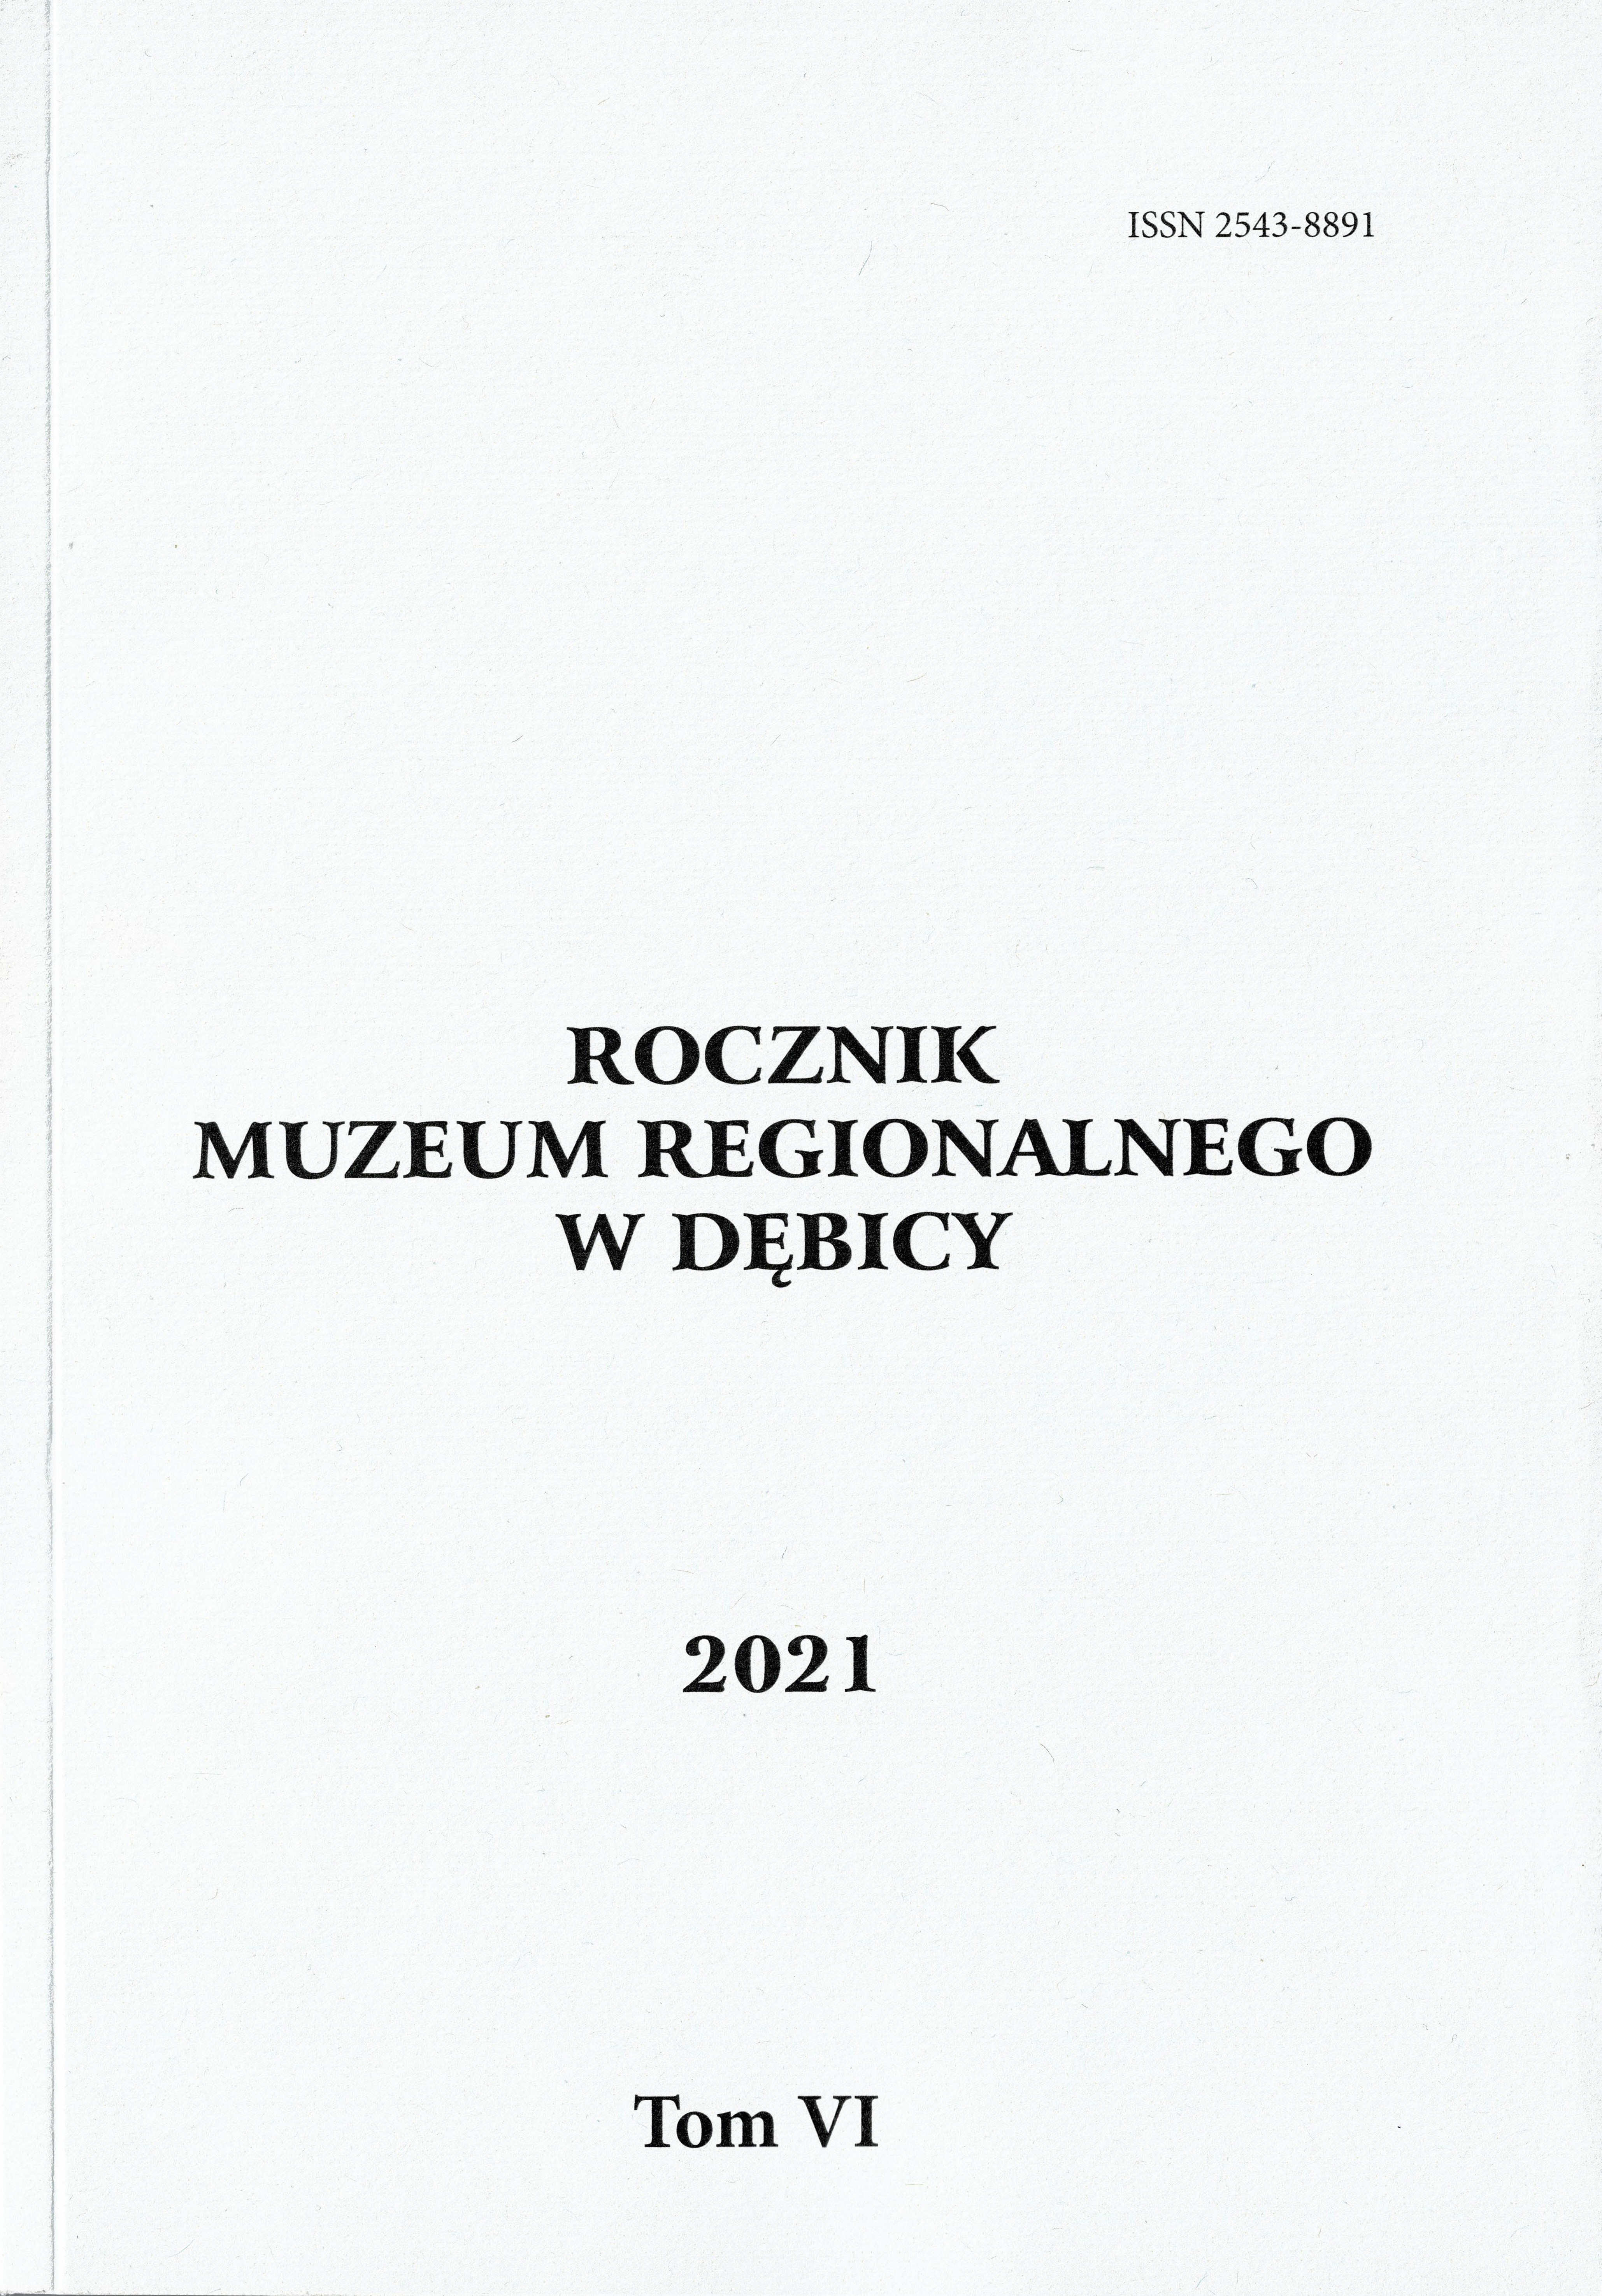 Rocznik Muzeum Regionalnego w Dębicy 2021 TOM VI